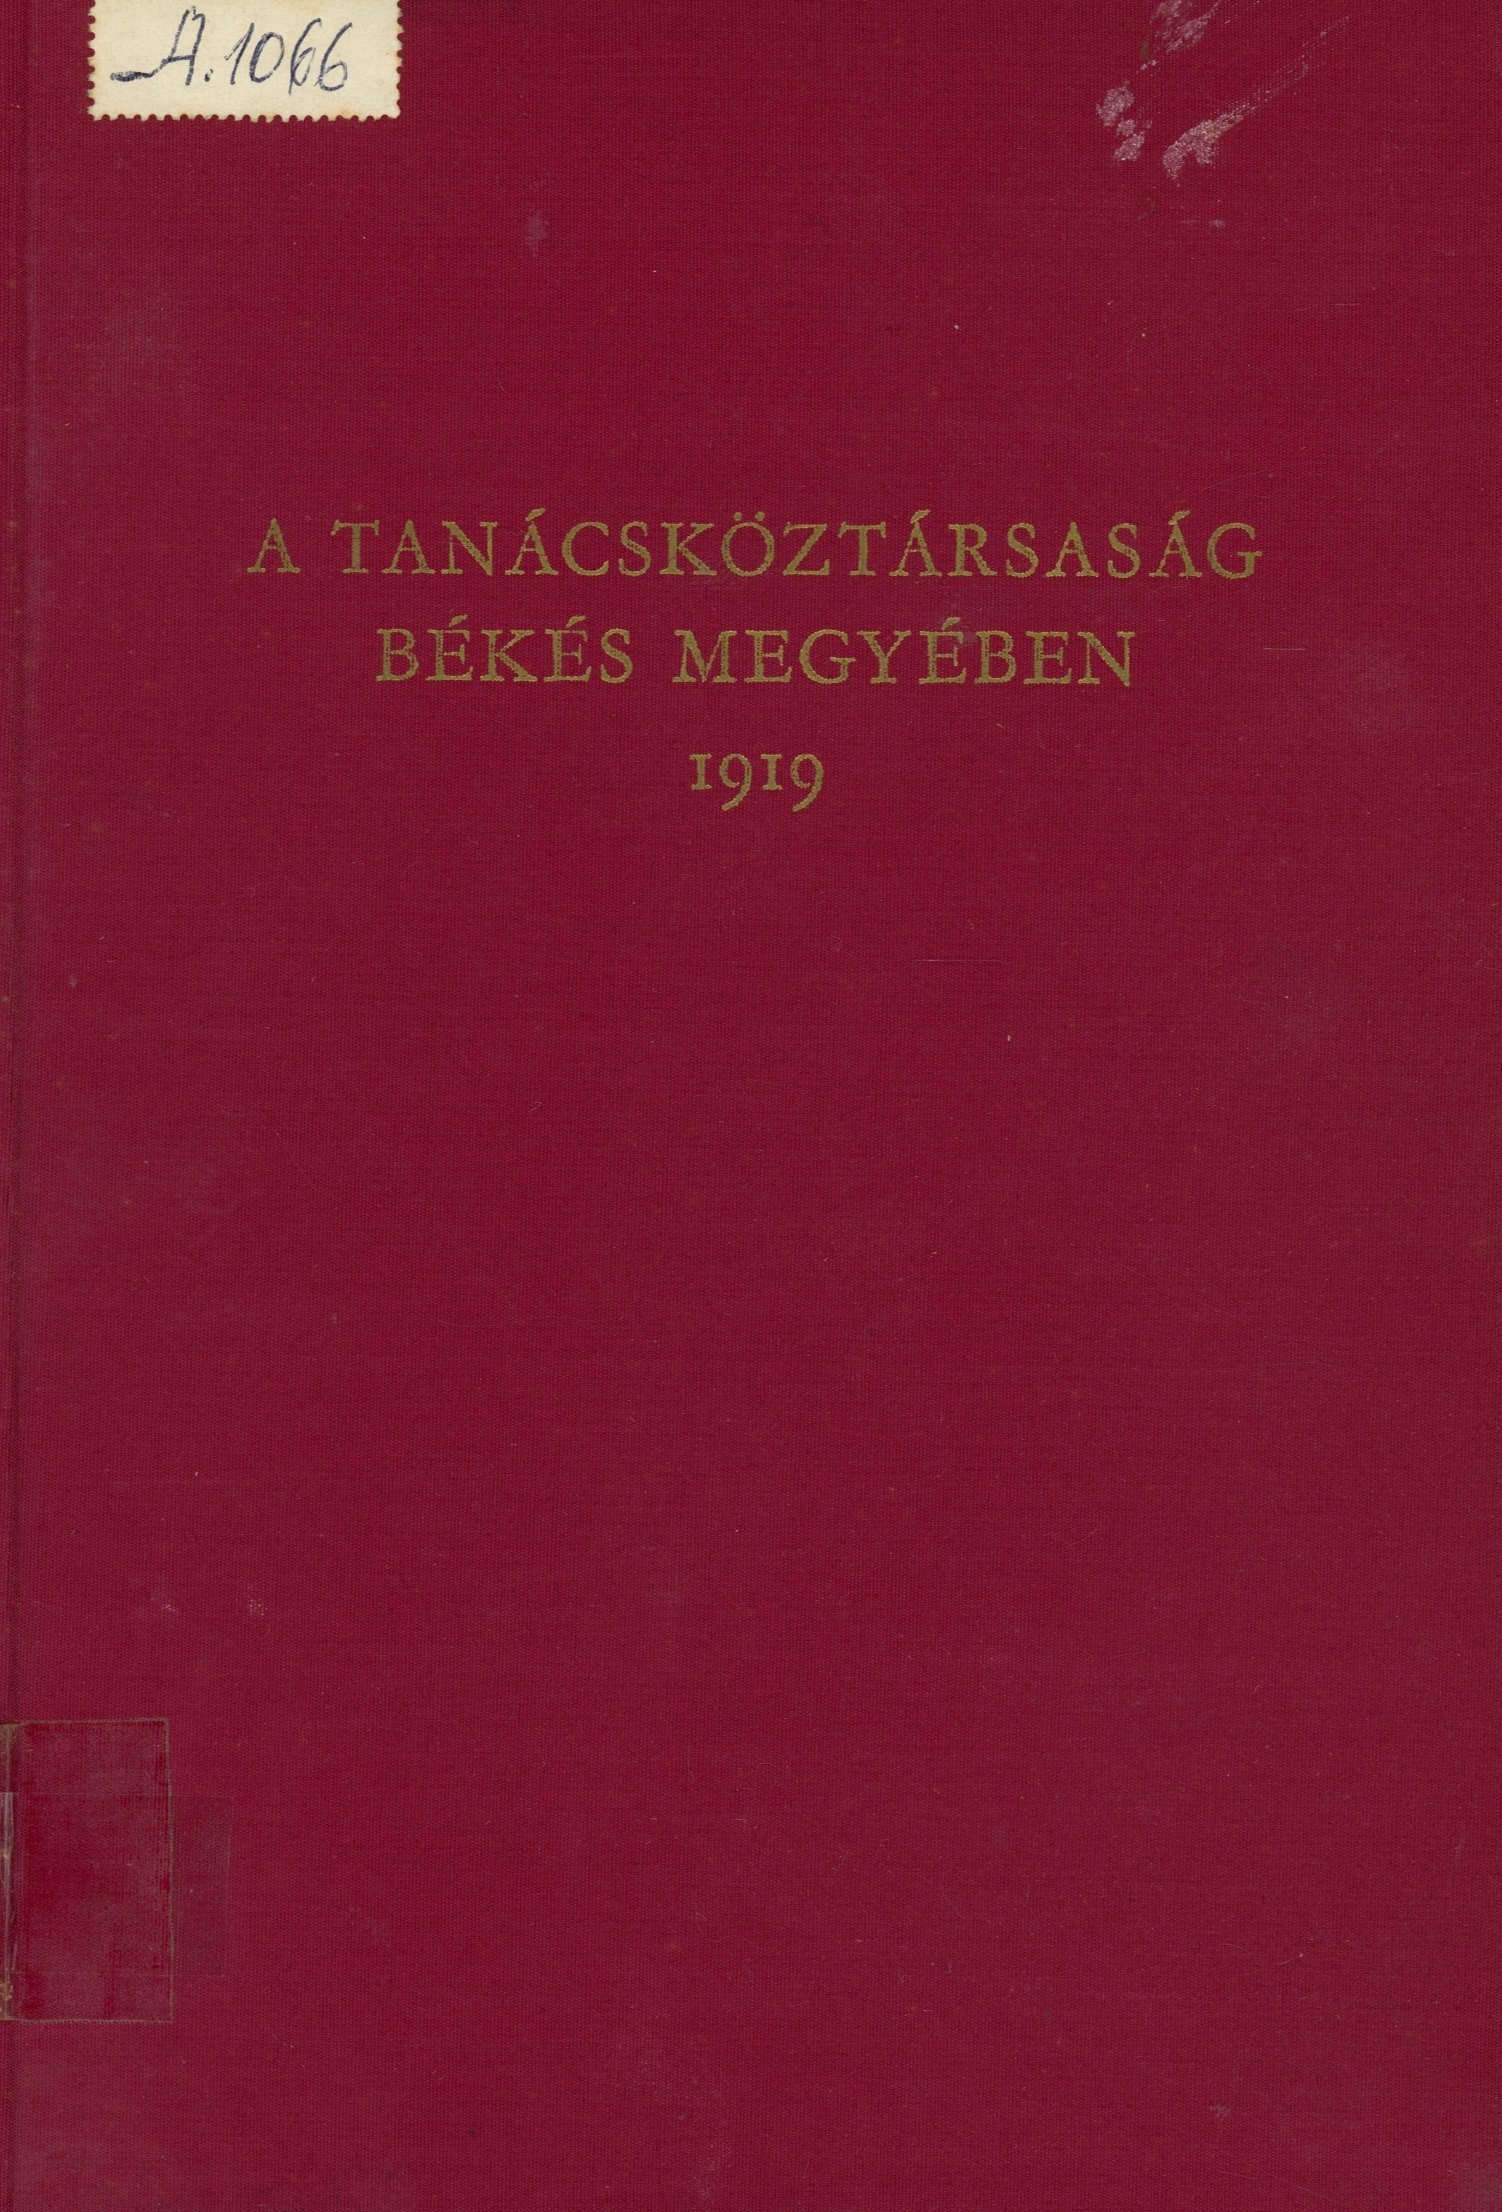 A Tanácsköztársaság Békés megyében 1919 (Erkel Ferenc Múzeum és Könyvtár, Gyula CC BY-NC-SA)